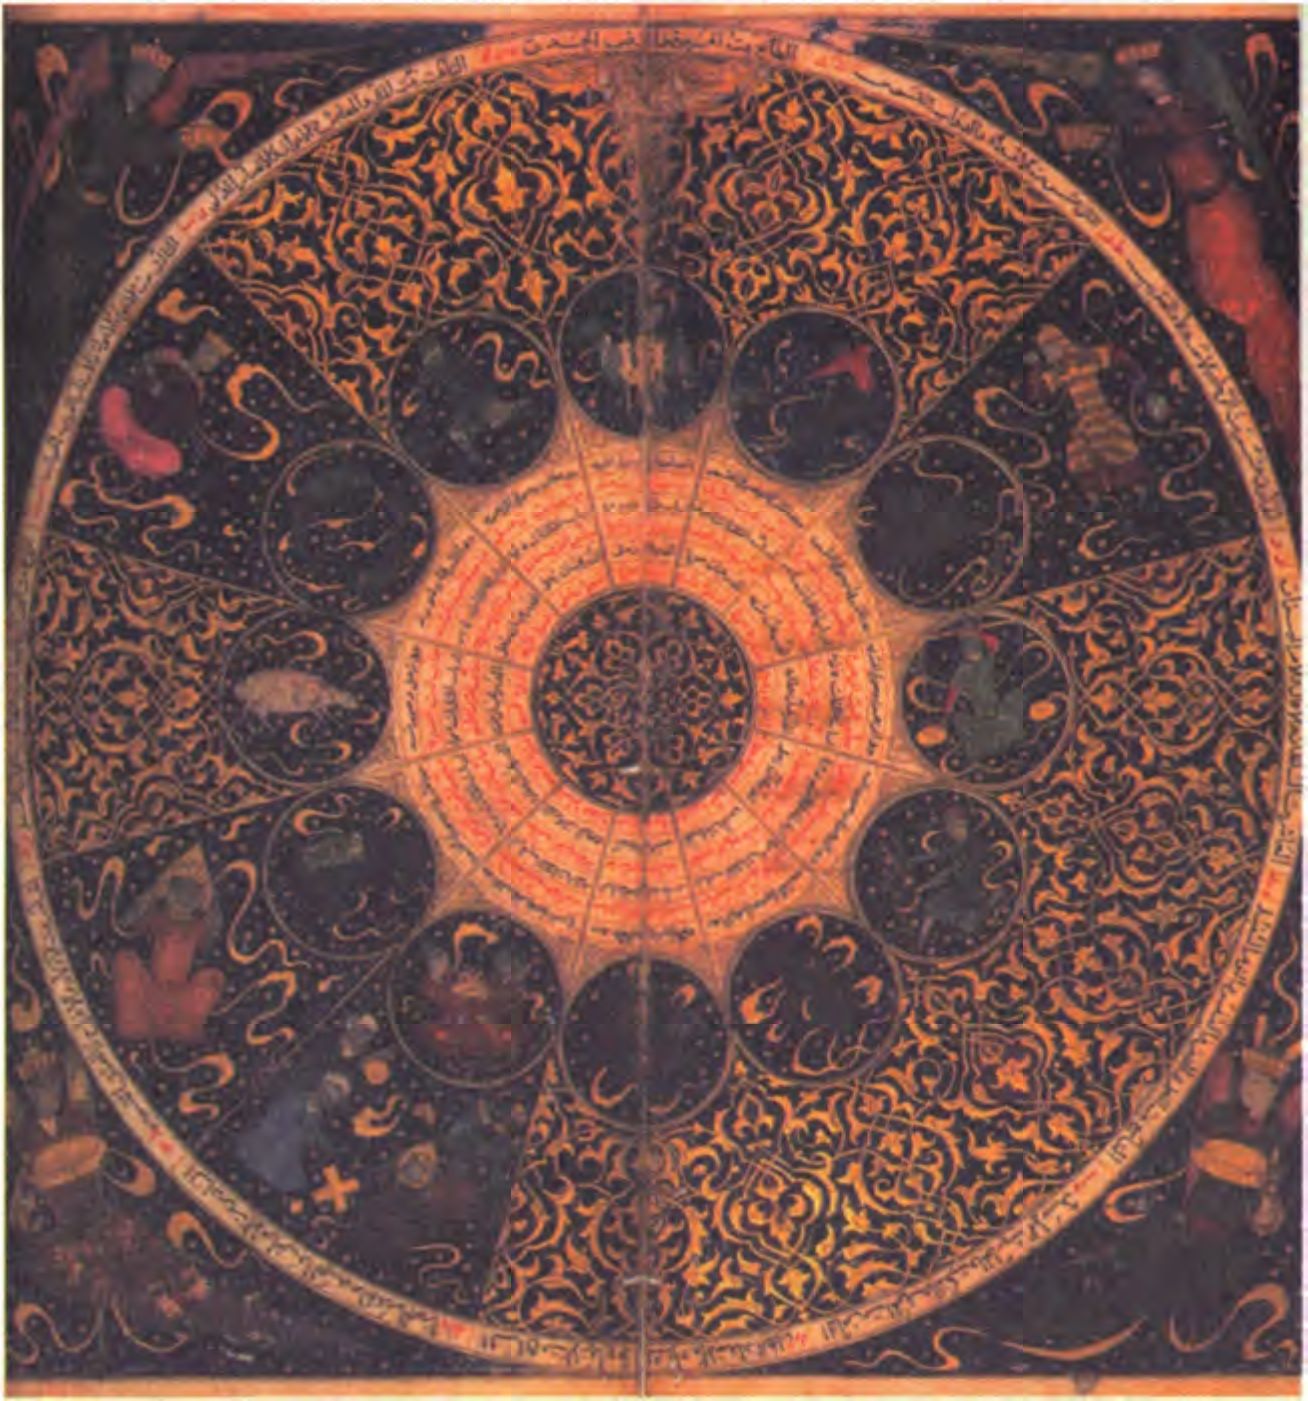 Прекрасный персидский гороскоп, датируемый 1384 г., Султана Искандара, внука Тамерлана. Необычным является асцендент, расположенный на верху изображения. Венера — в третьем доме, играет на лютне. Солнце в пятом доме, а в шестом доме собрались Луна, Юпитер, Сатурн и Меркурий. (Институт Вэлком)